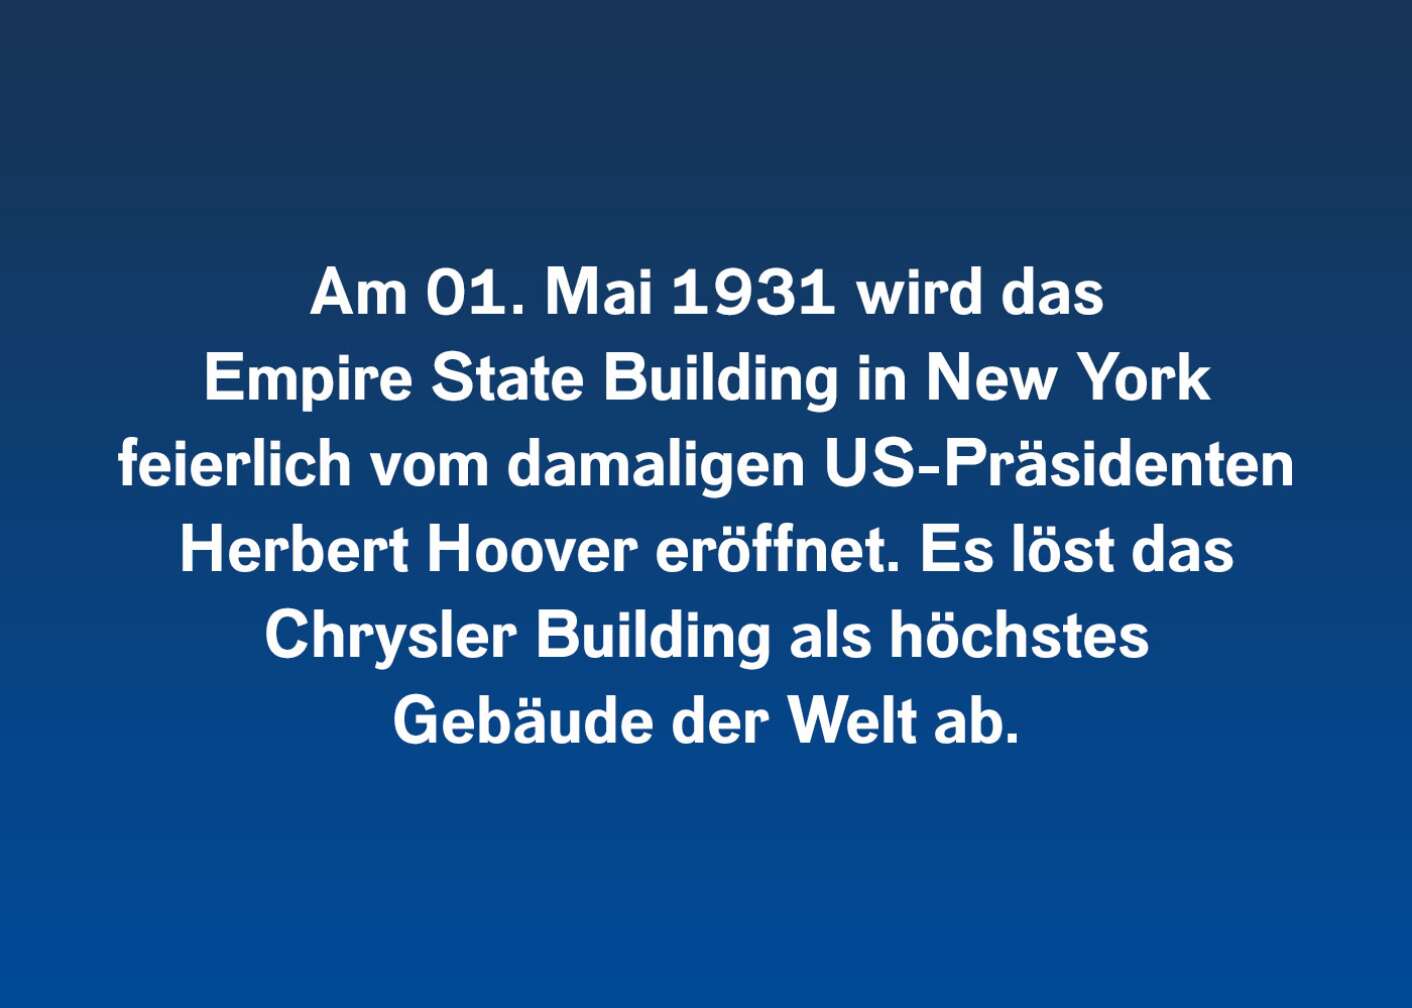 Am 01. Mai 1931 wird das Empire State Building in New York feierlich vom damaligen US-Präsidenten Herbert Hoover eröffnet. Es löst das Chrysler Building als höchstes Gebäude der Welt ab.